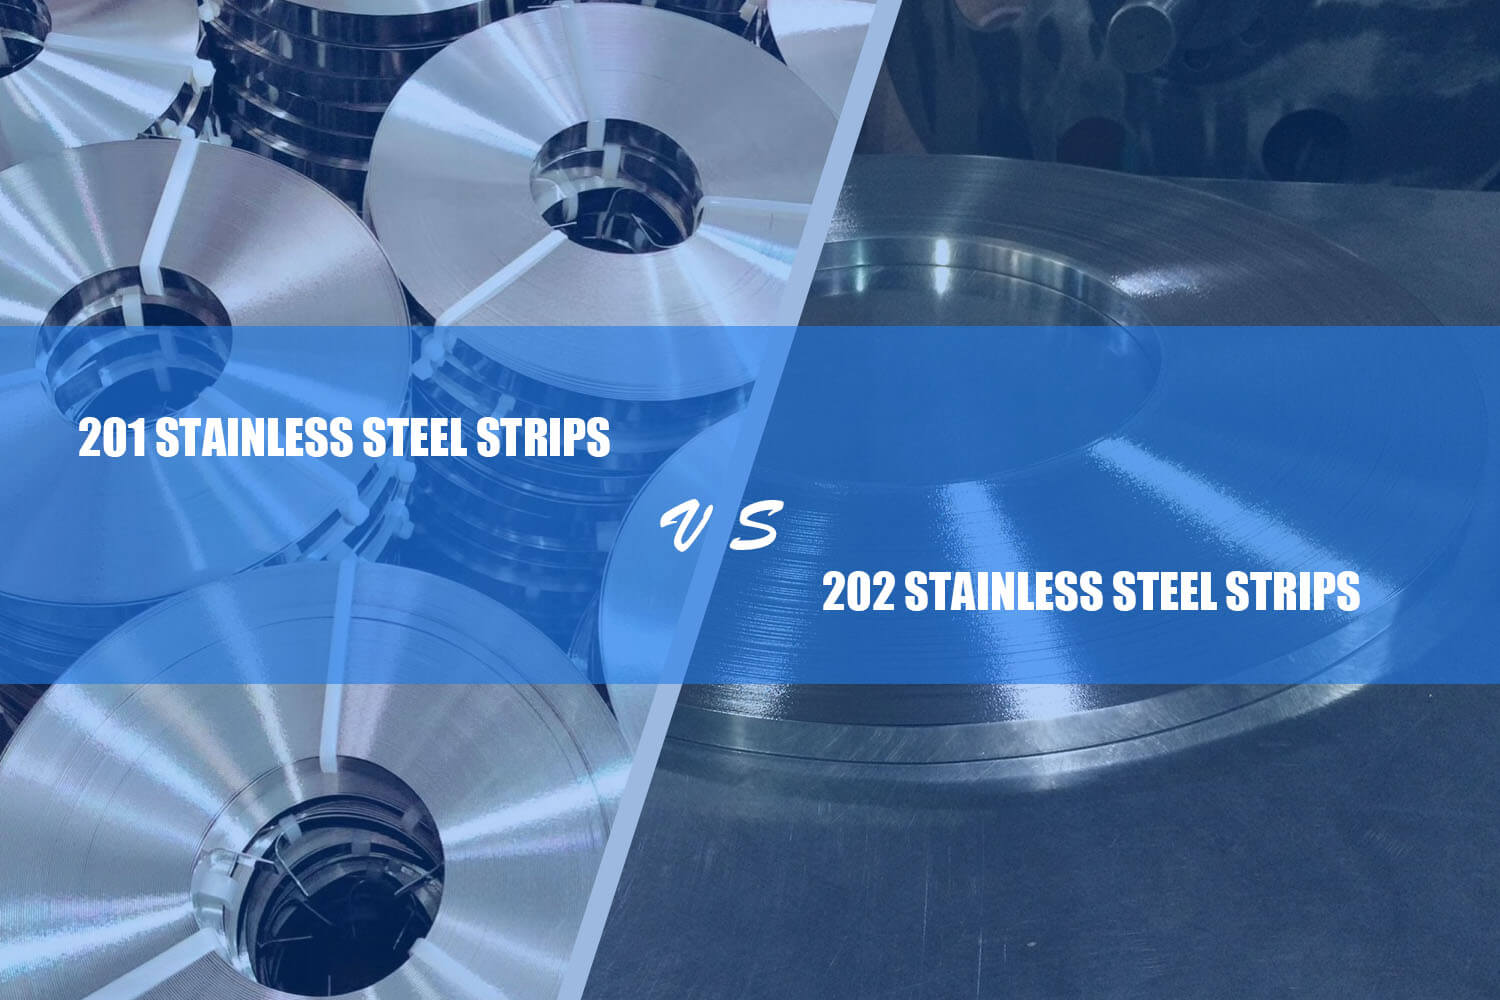 201 stainless steel strip vs 202 stainless steel strip